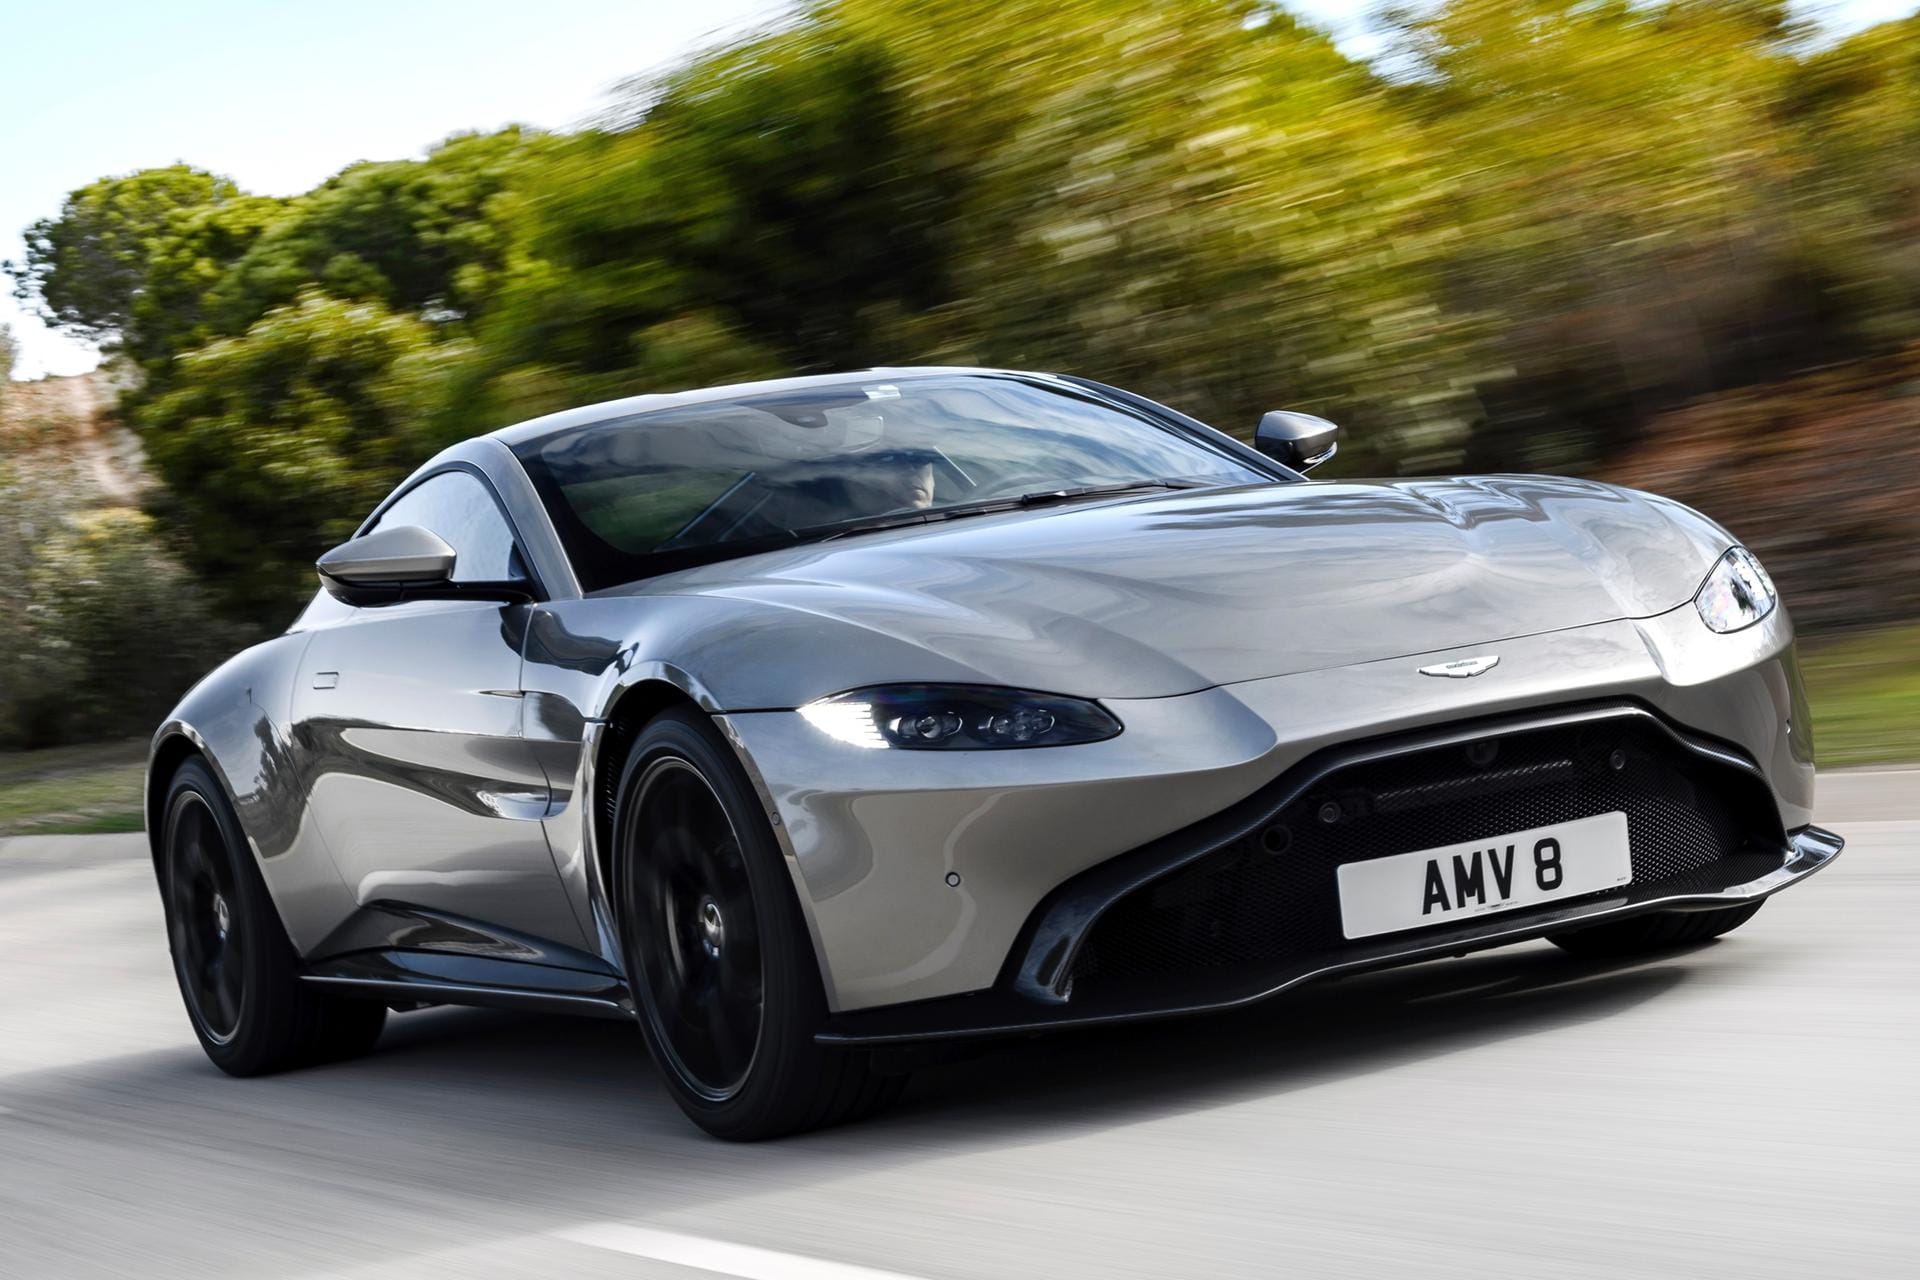 Das neue Einstiegsmodell von Aston Martin: Im Juni kommt es in Deutschland auf den Markt.